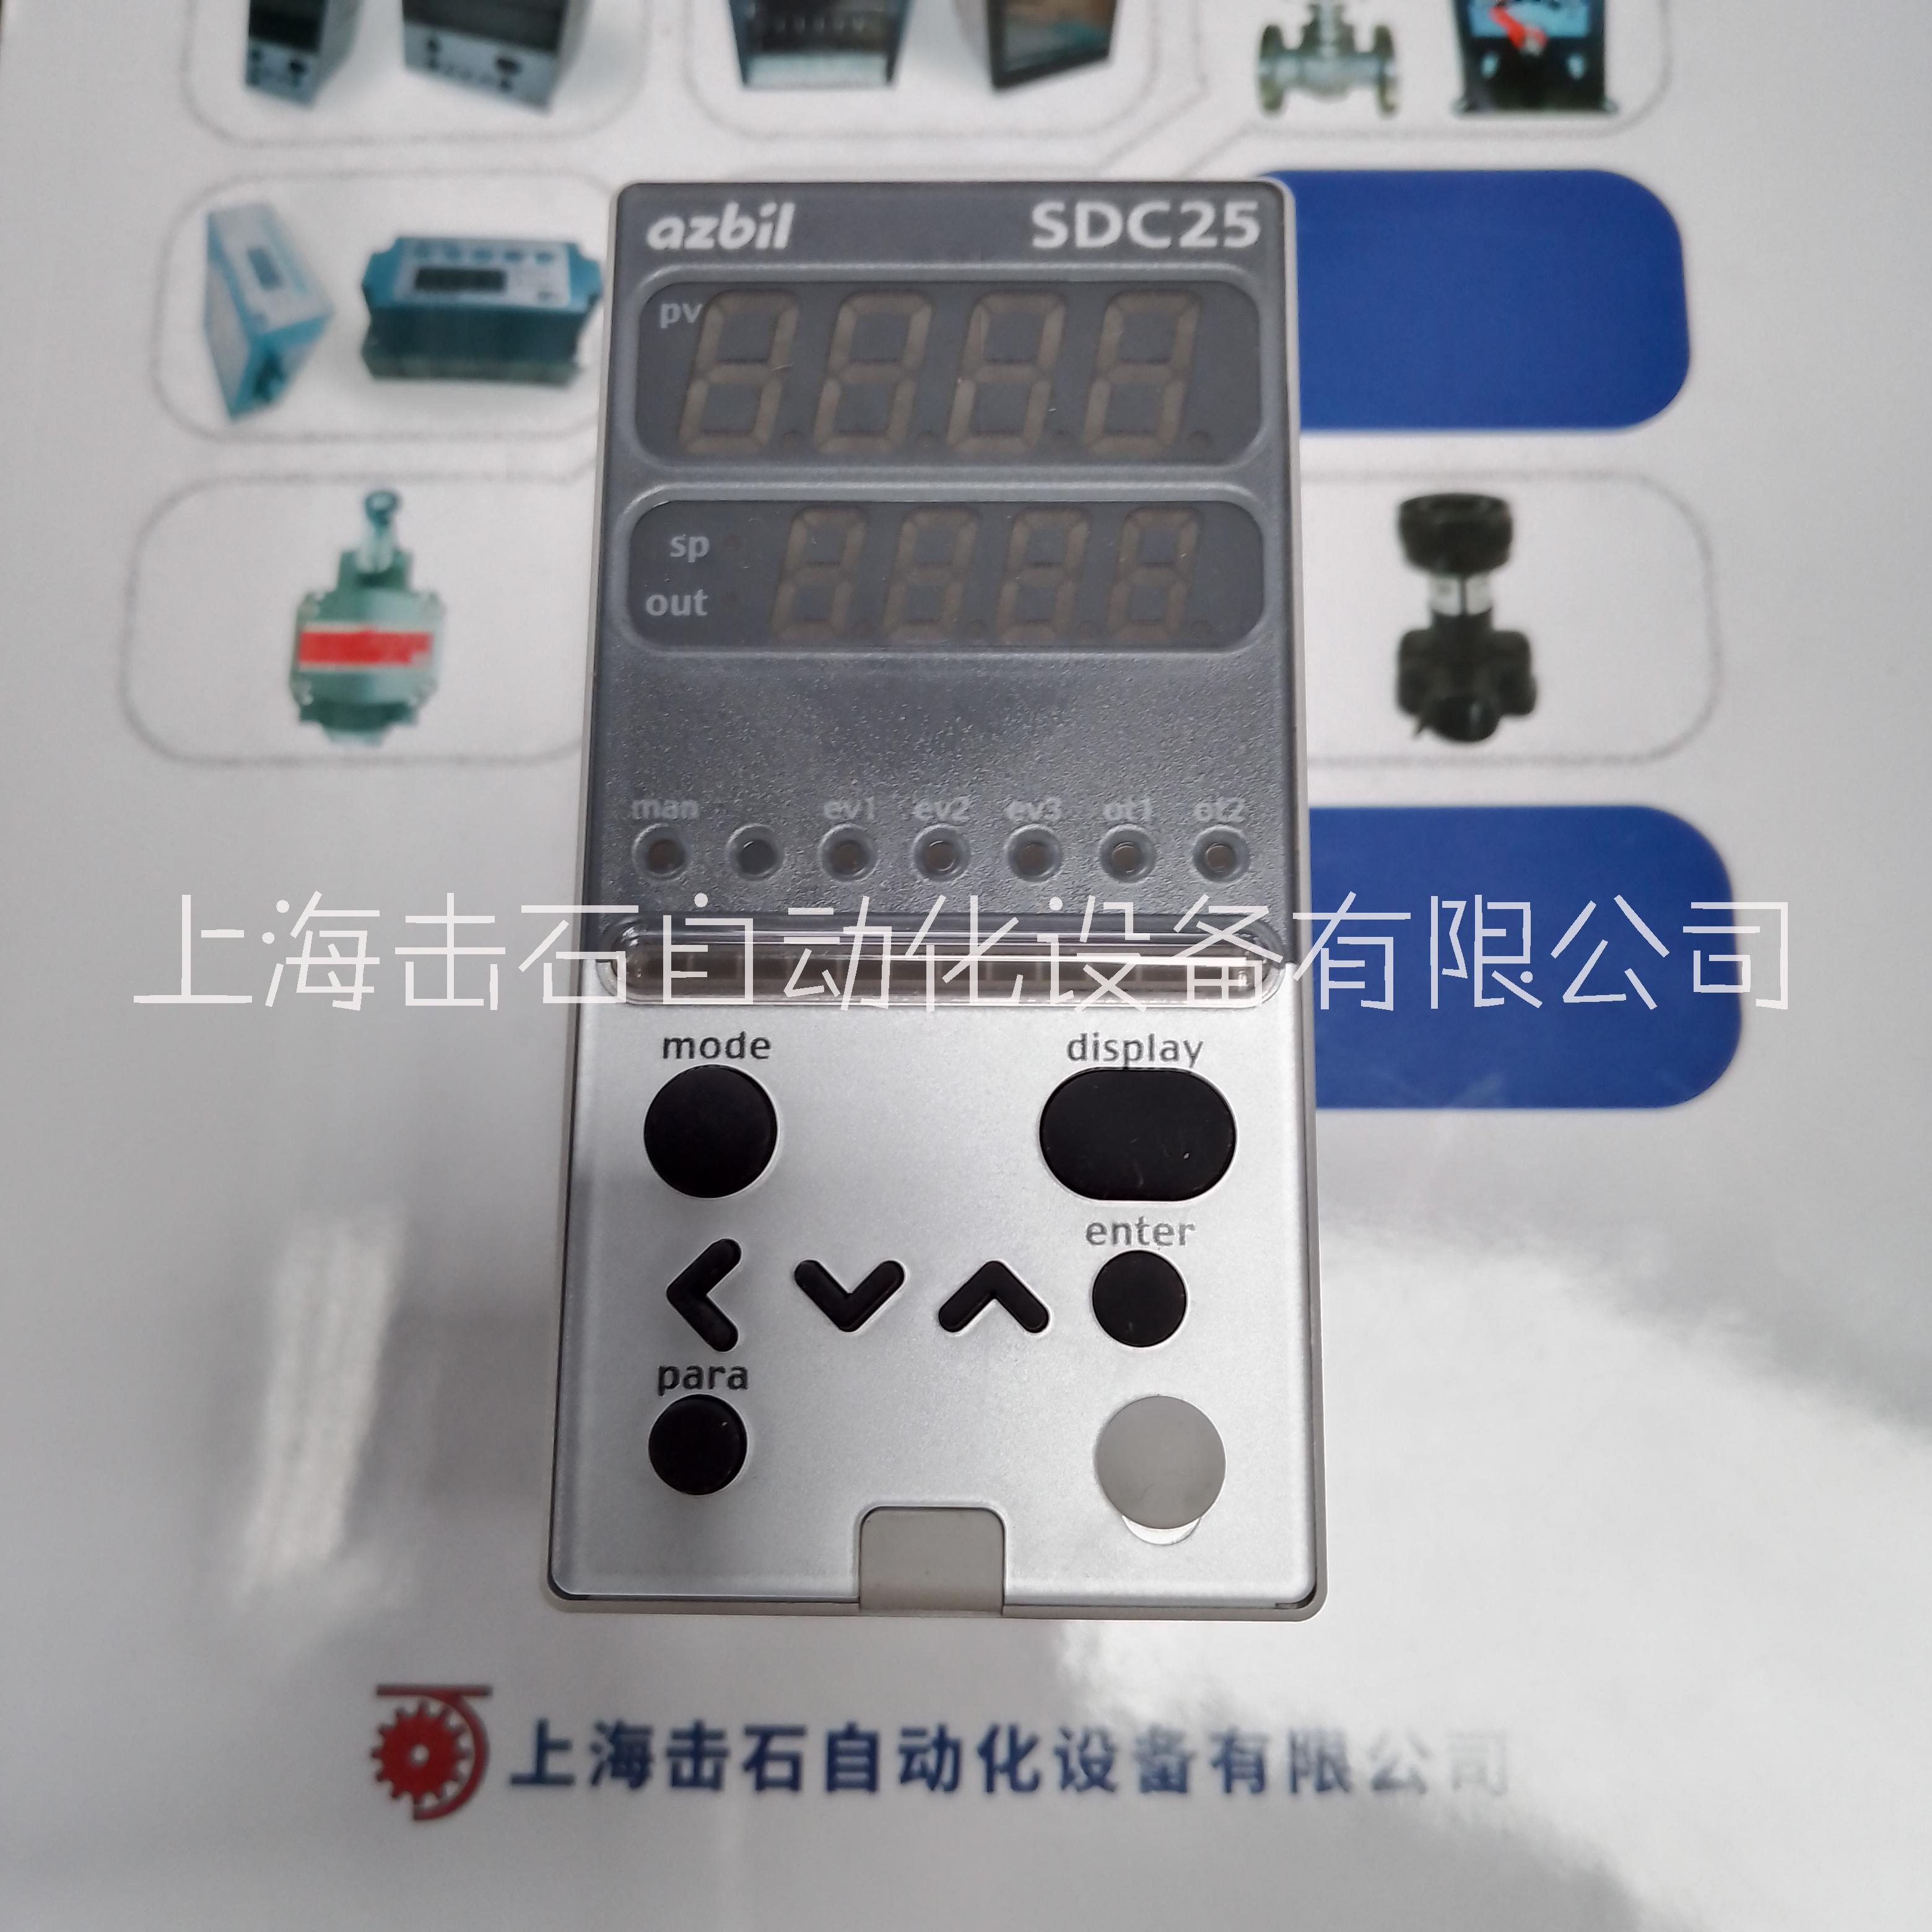 上海击石自动化设备有限公司